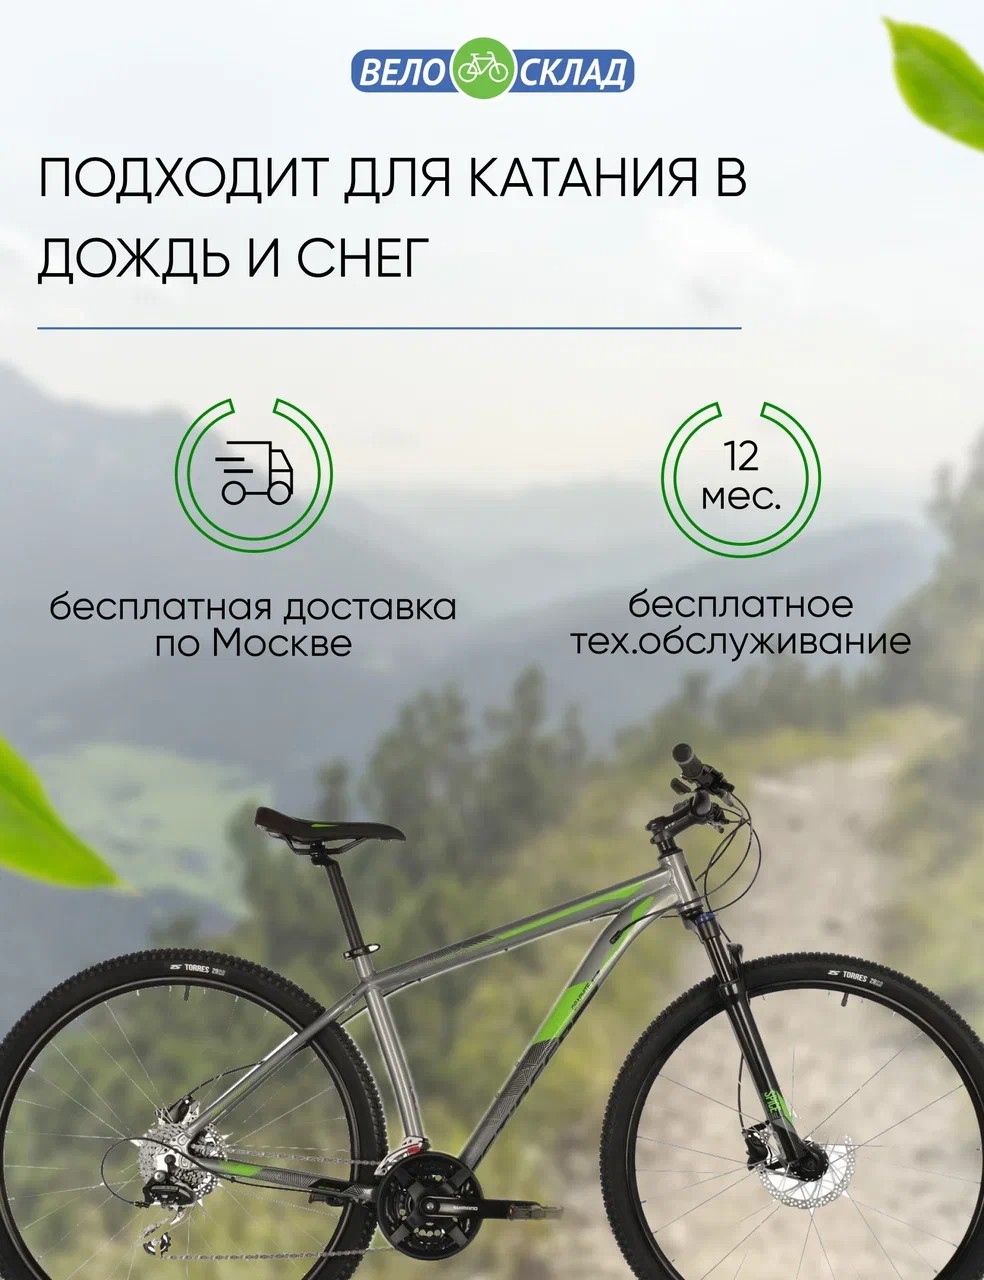 Горный велосипед Stinger Graphite Evo 29, год 2021, цвет Серебристый, ростовка 20